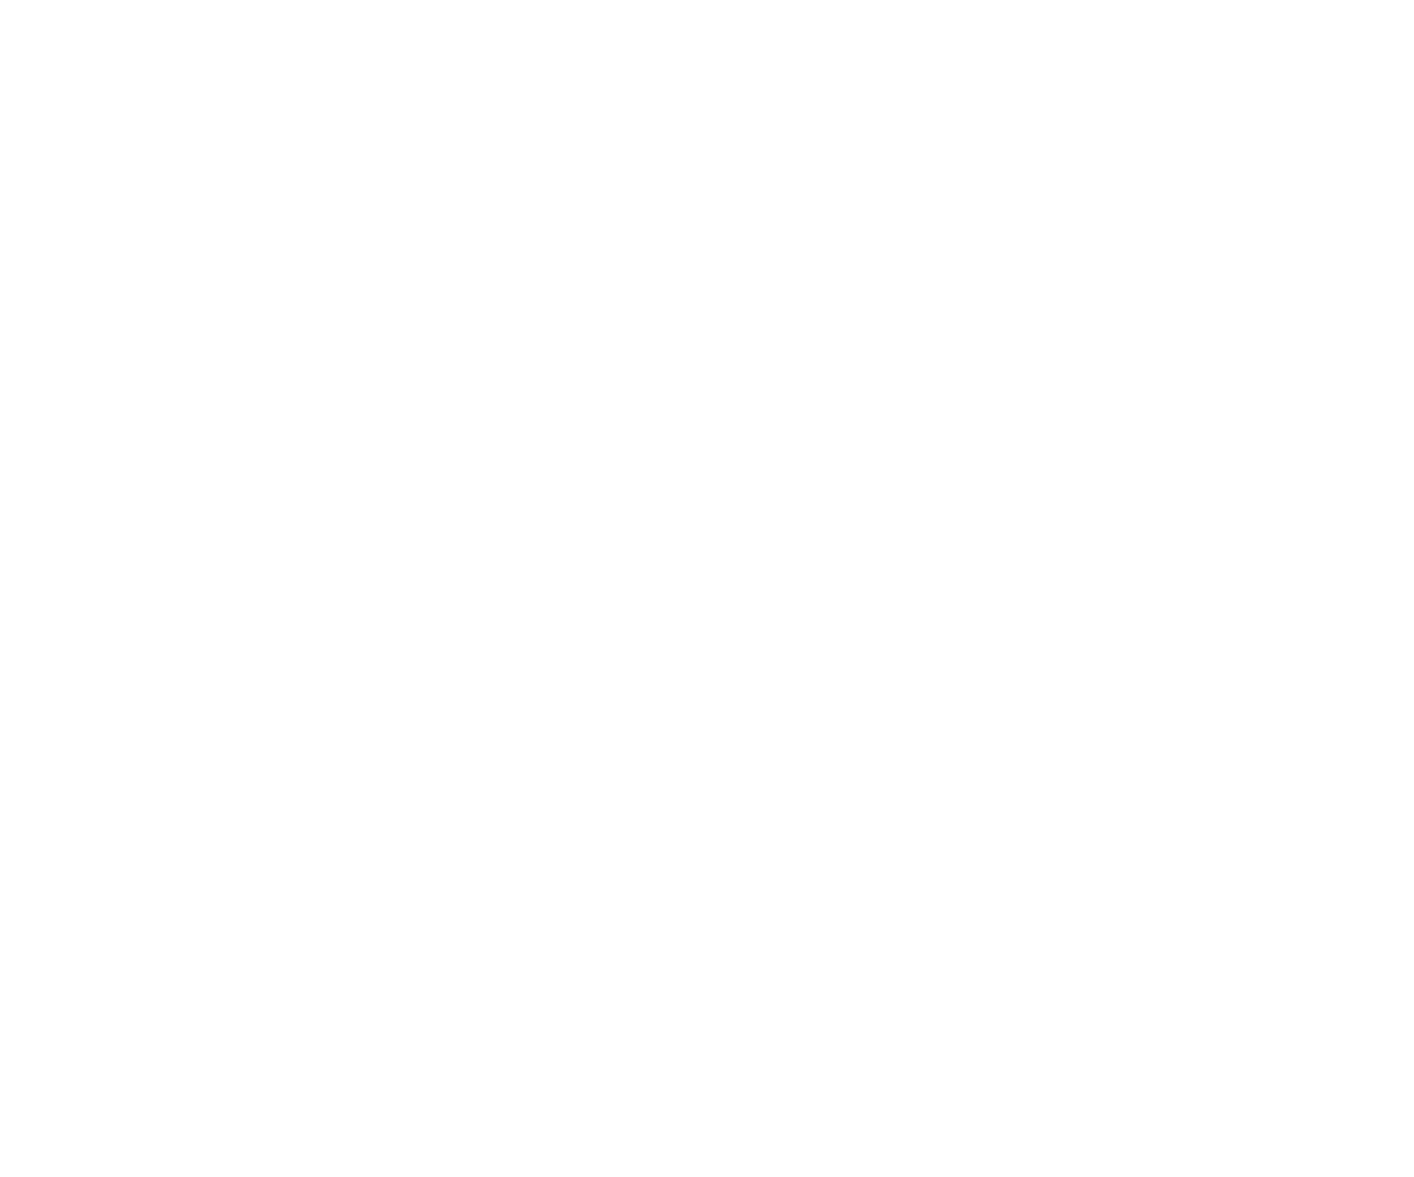 Franck Almana